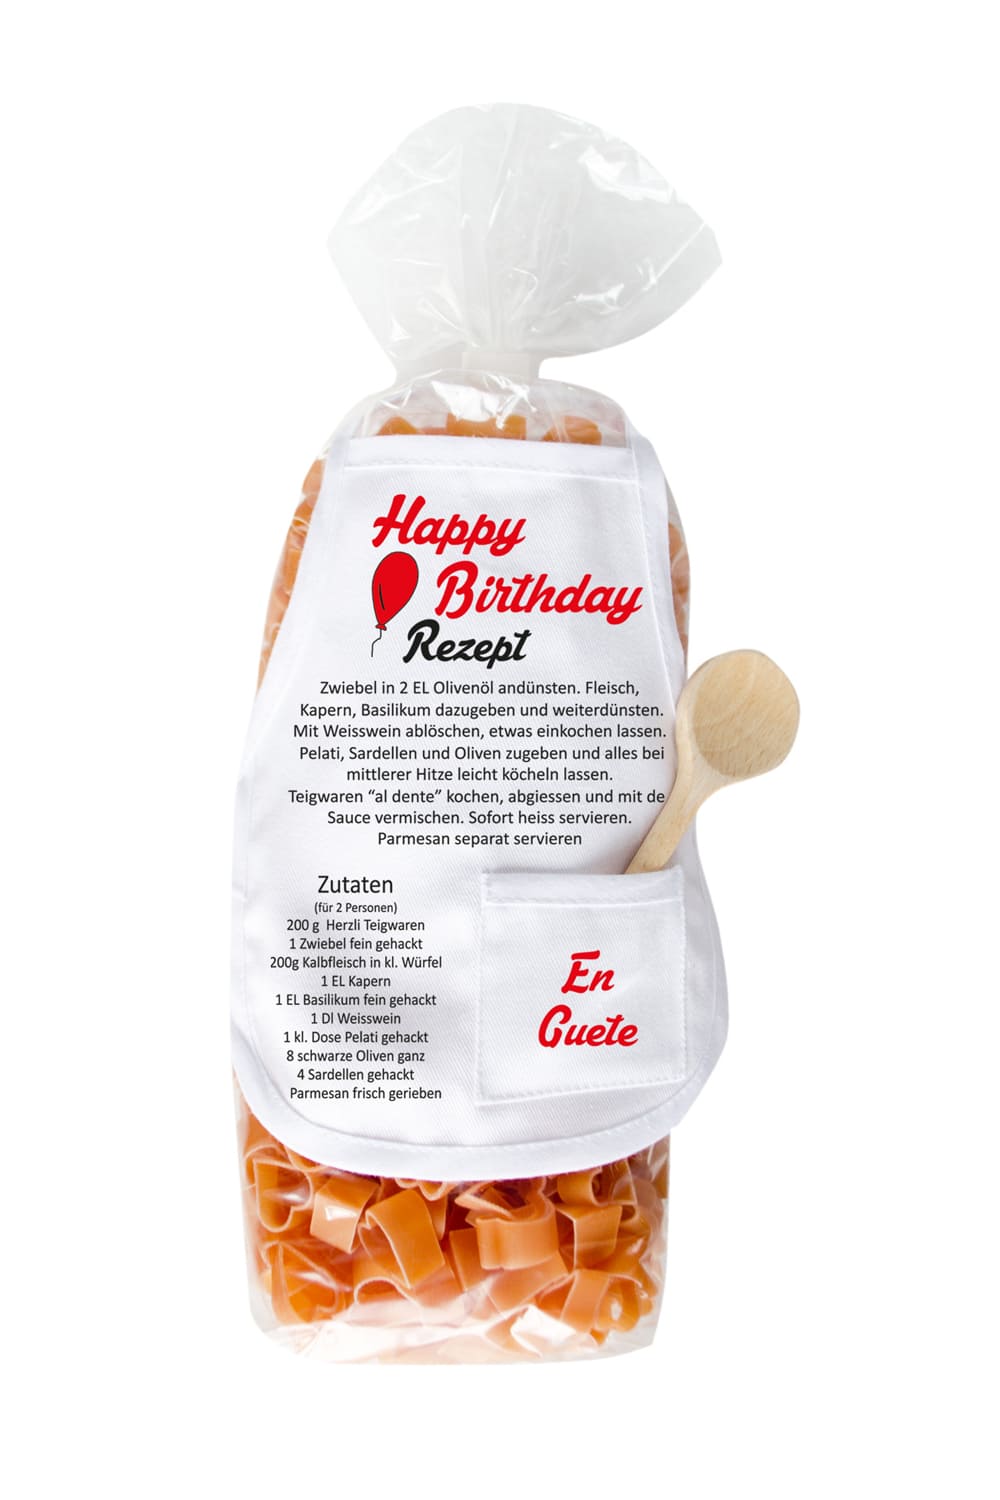 Happy Birthday Herz Pasta mit Nudeln in Herz Form. Geburtstagsgeschenk mit Pasta, Mini-Kochschuerze und kleinem Kochloeffel aus Holz